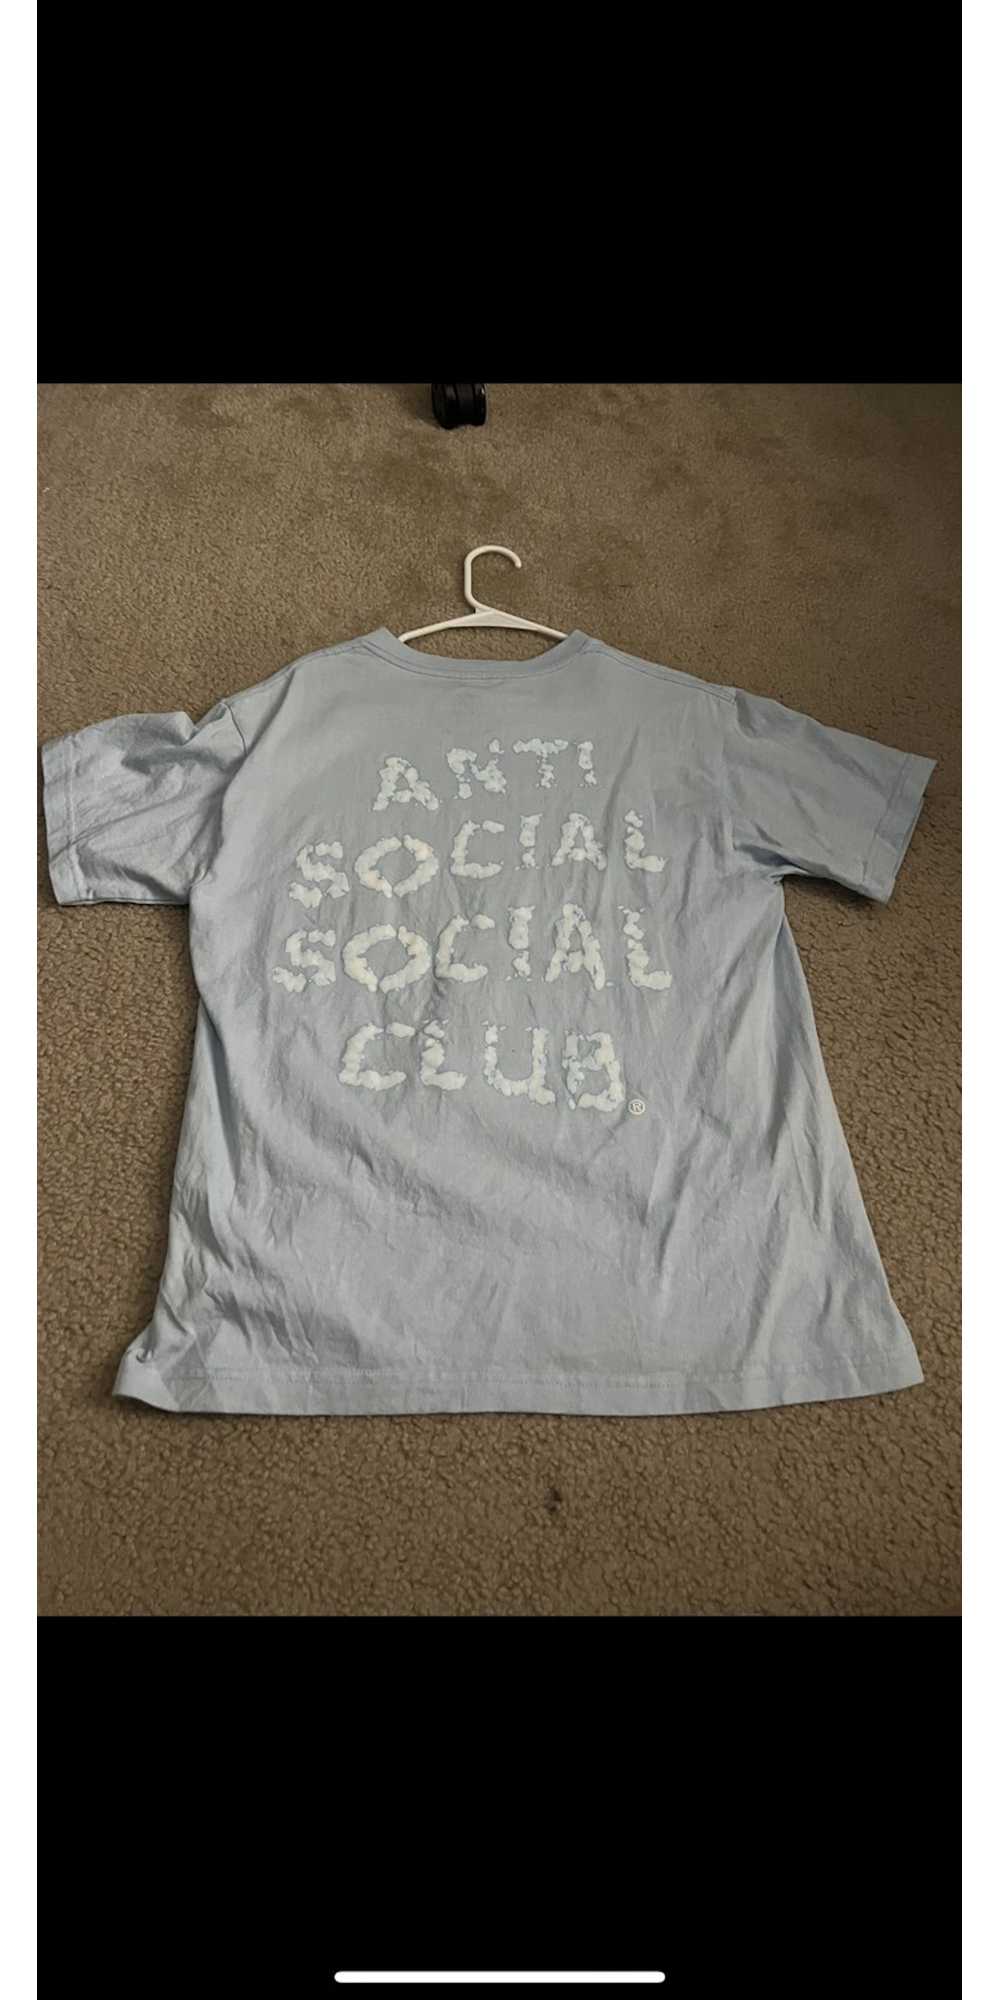 Anti Social Social Club anti social club t shirt - image 2